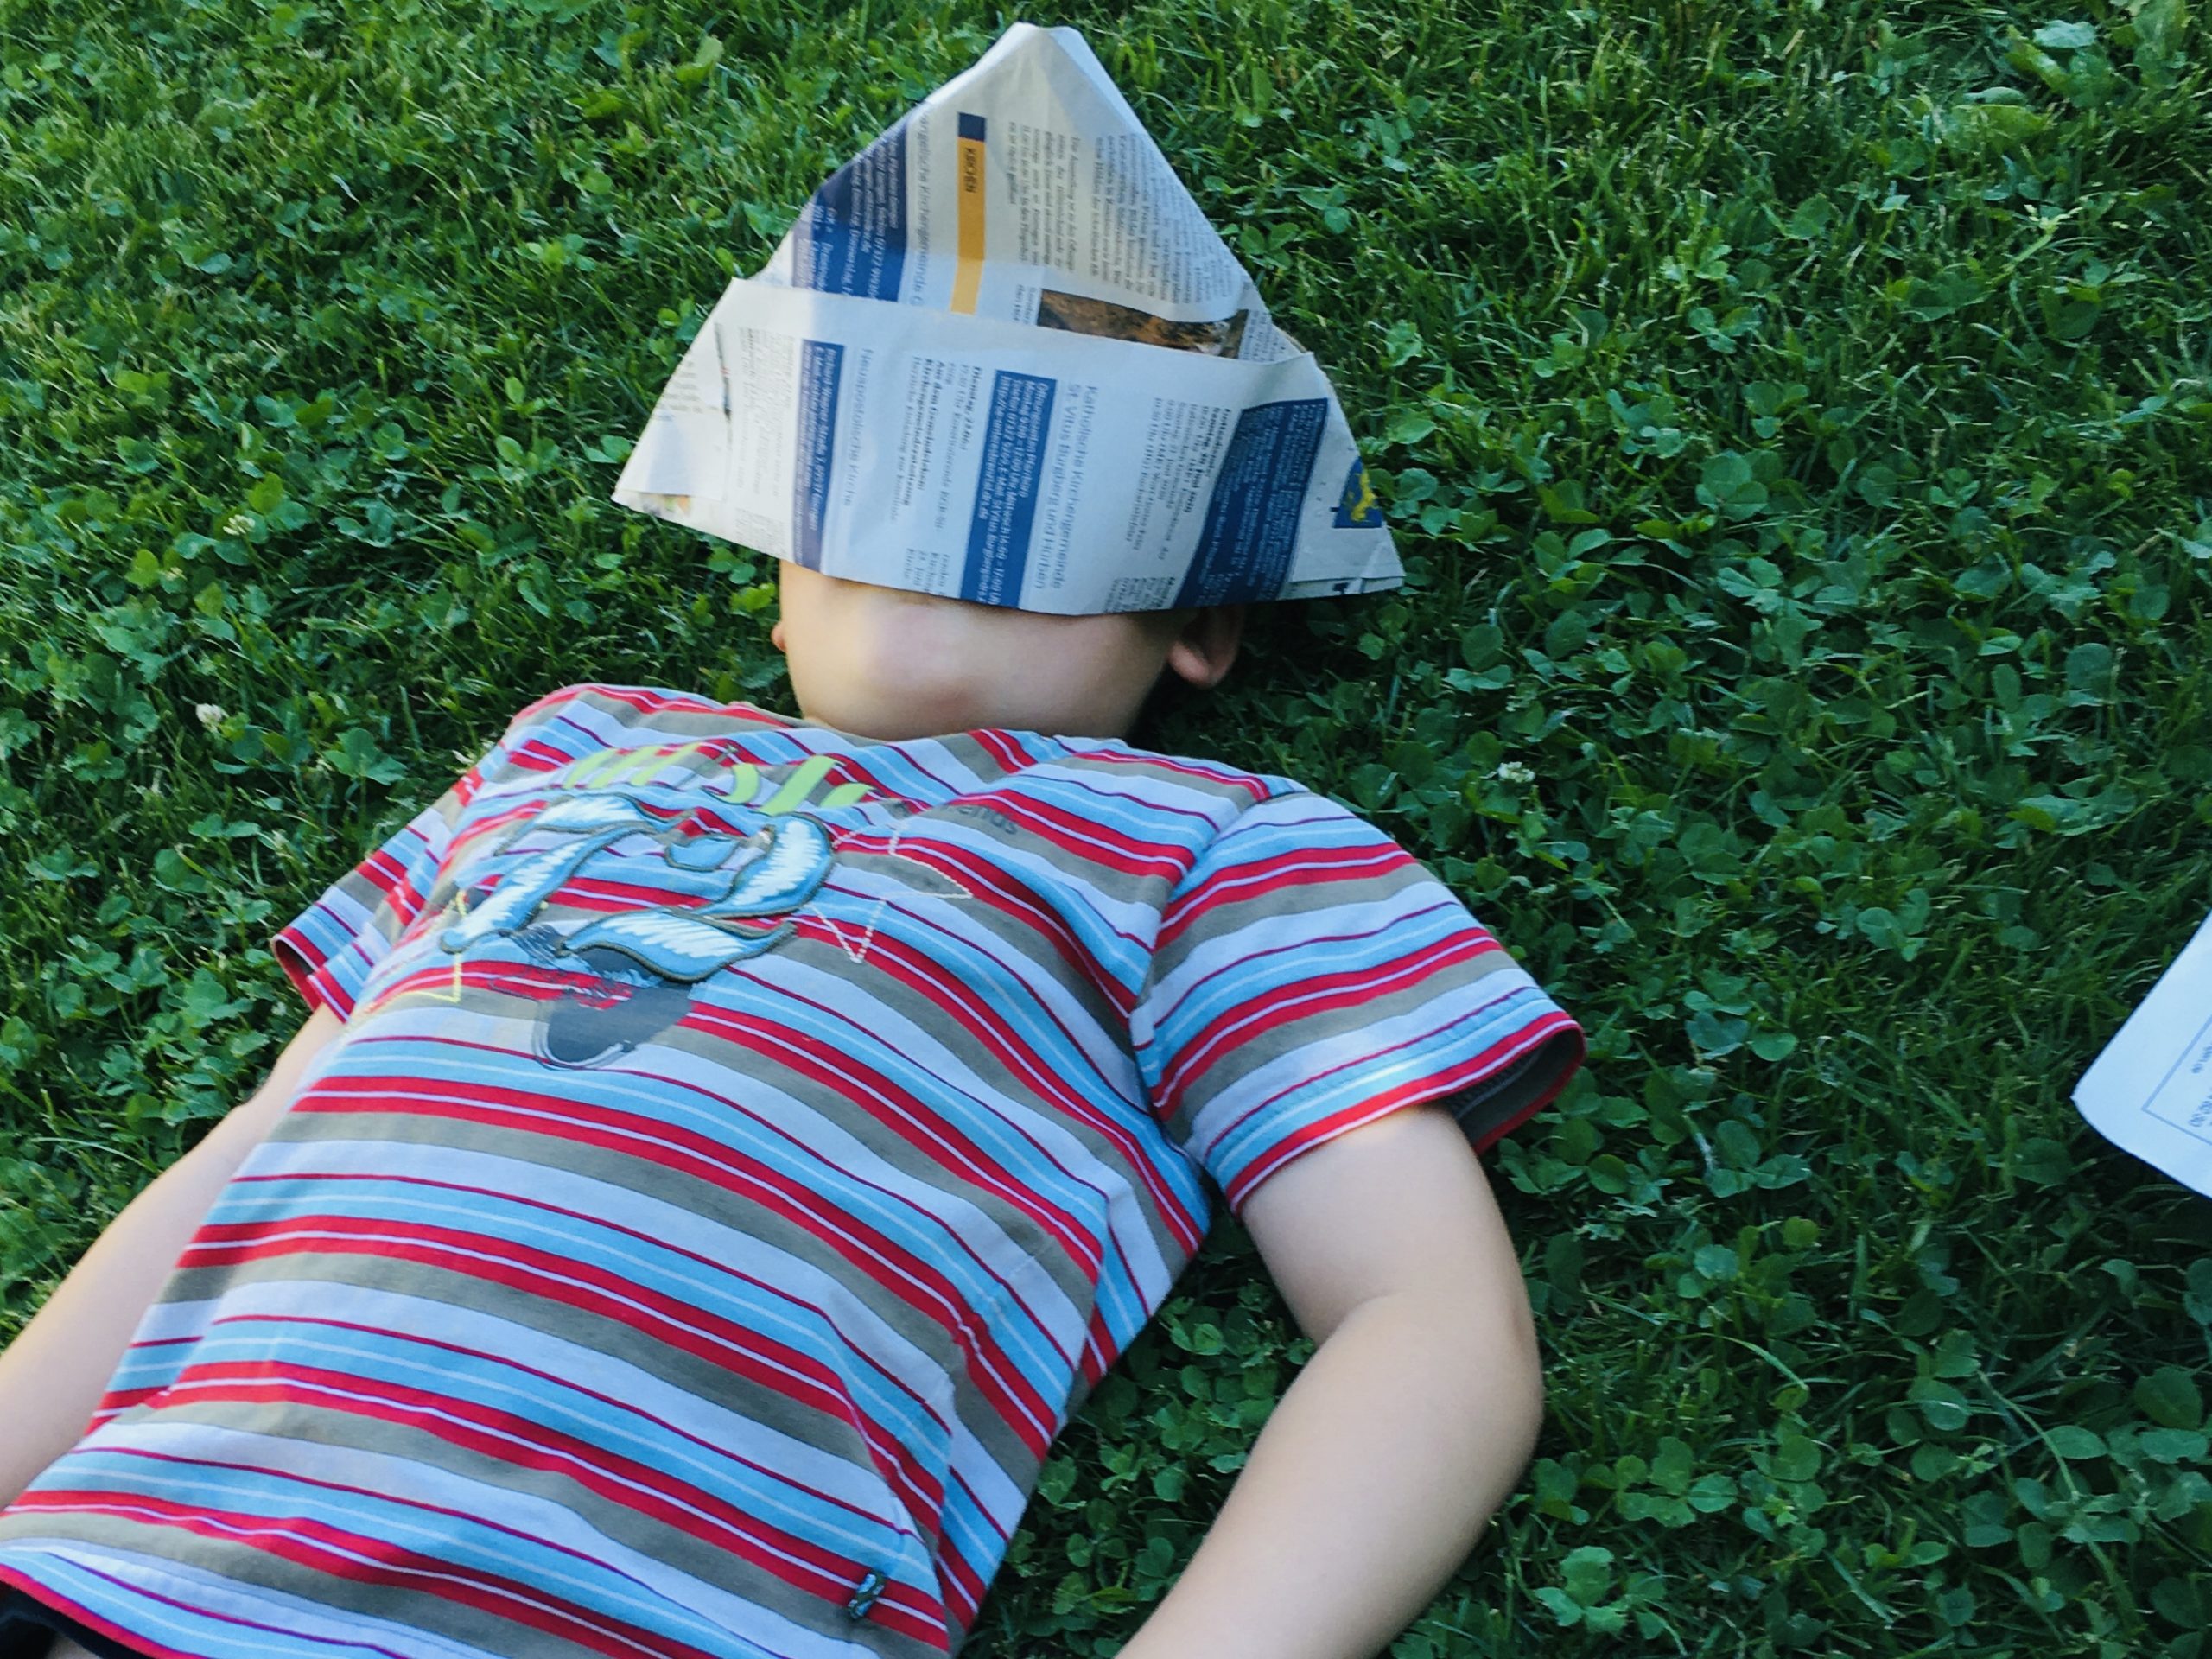 Bild zum Schritt 7 für das Bastel- und DIY-Abenteuer für Kinder: 'Wir falten einen Papierhut aus der Zeitung, zum...'